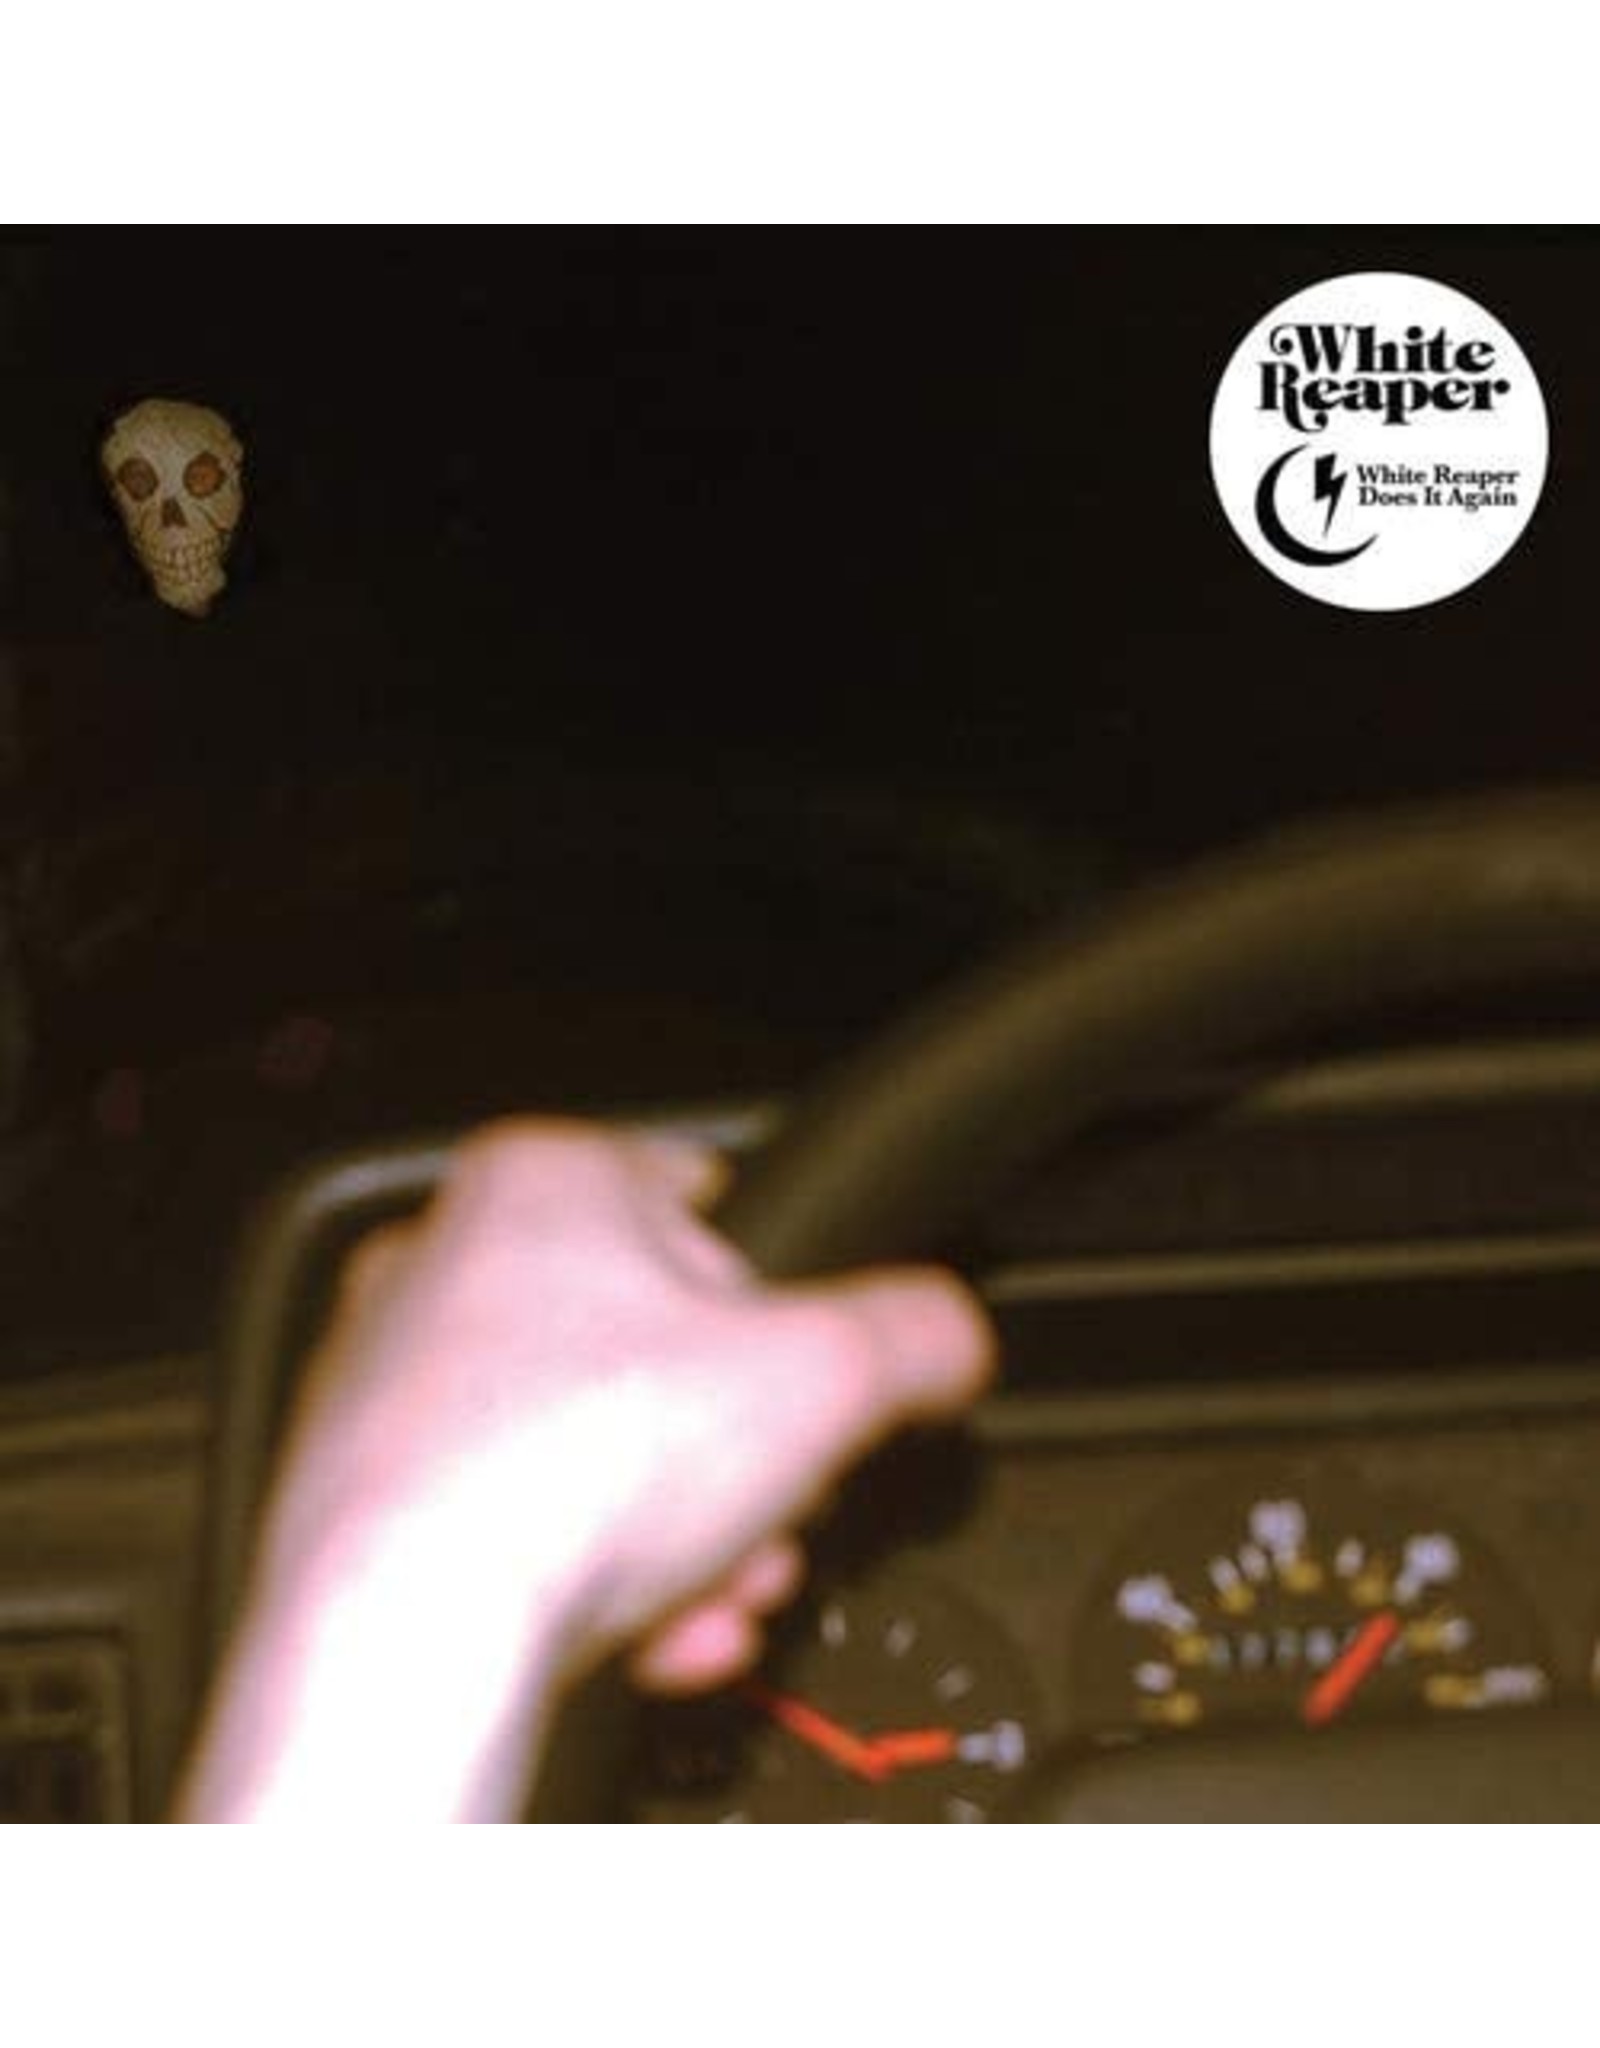 White Reaper - White Reaper Does It Again (Green Vinyl)